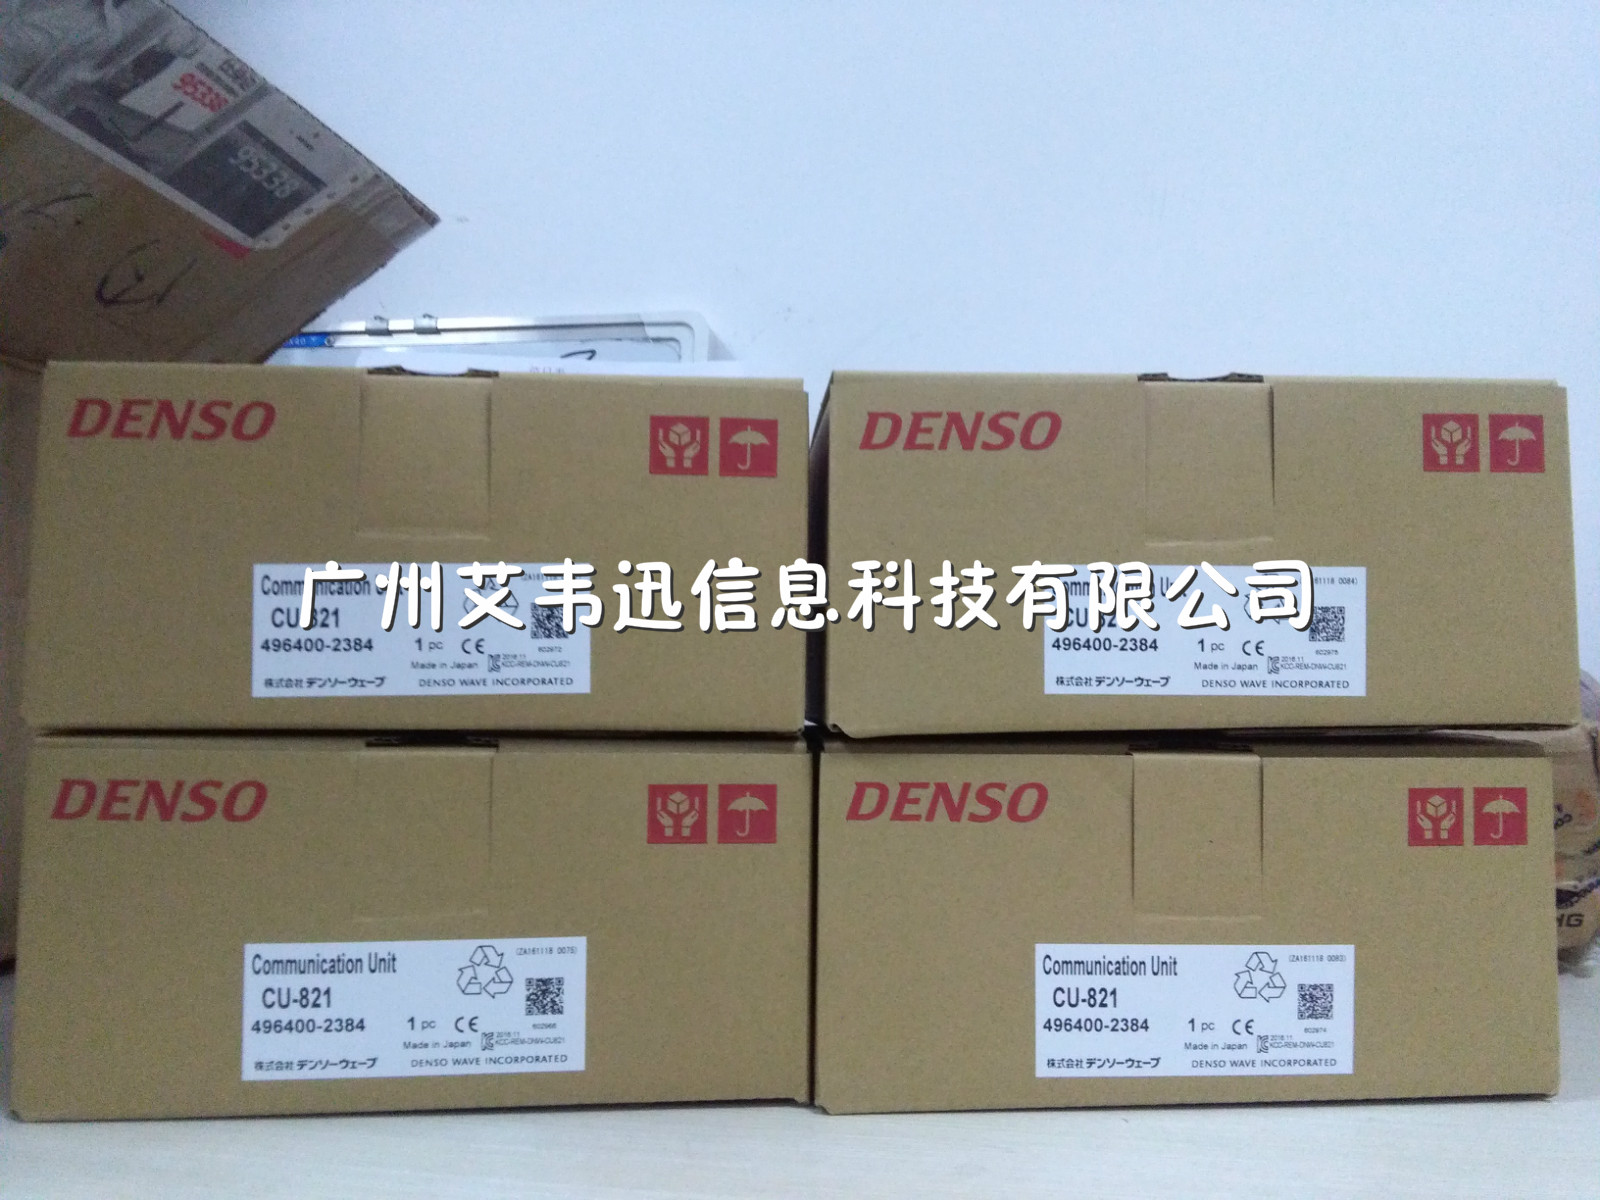 售出4套Denso BHT-825QW 数据采集器到上海某贸易公司